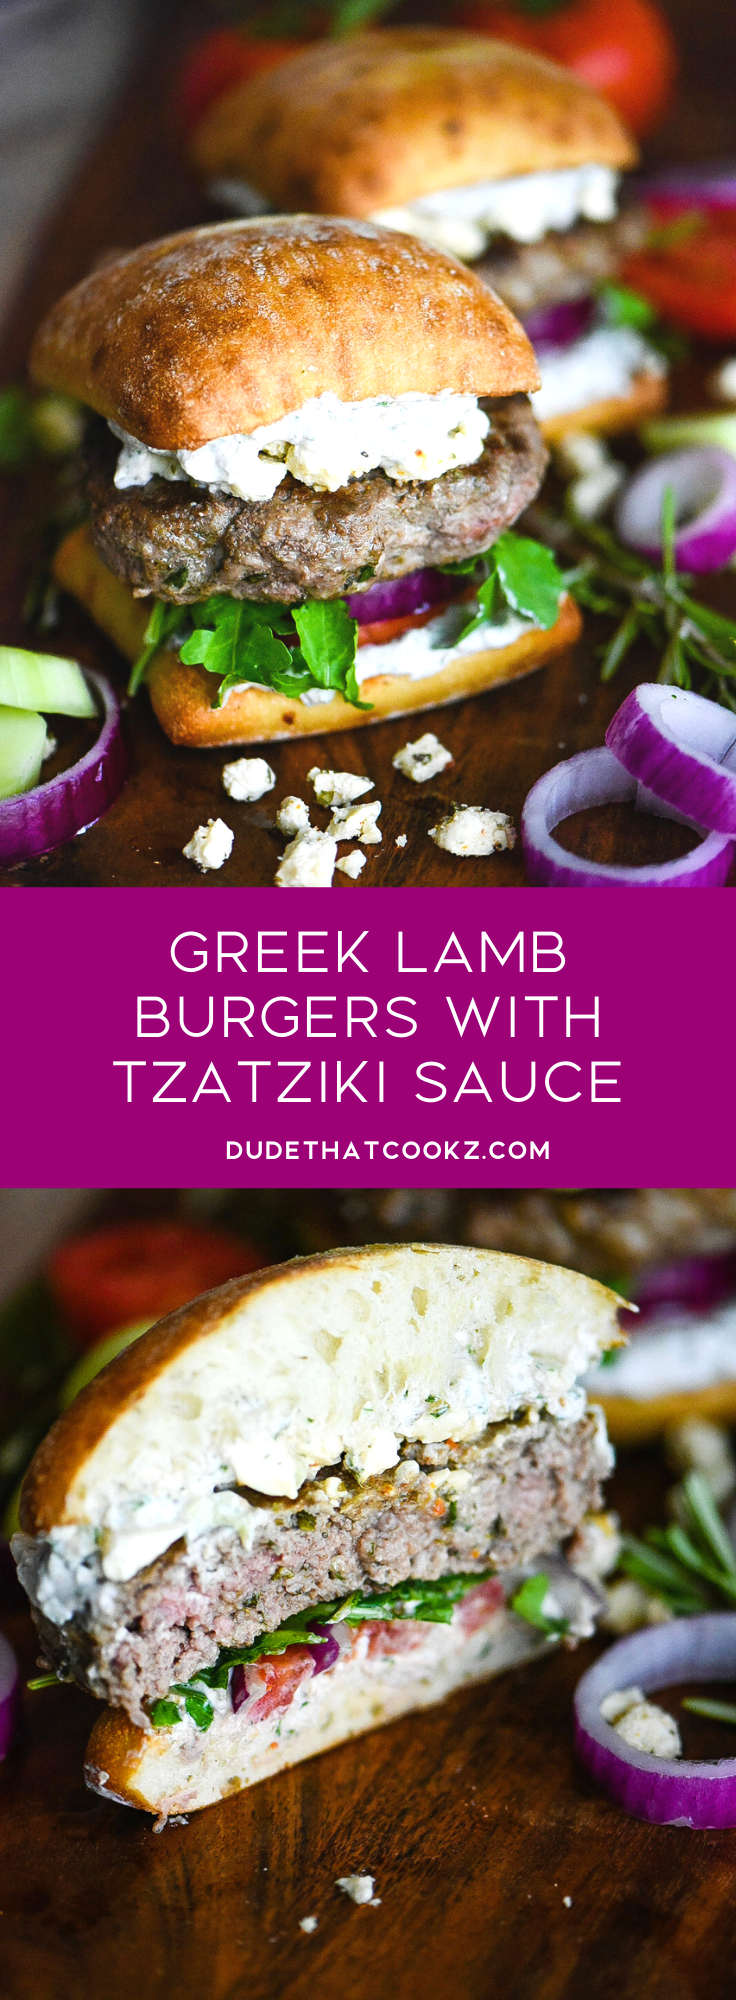 Greek Lamb Burgers with Tzatziki Sauce